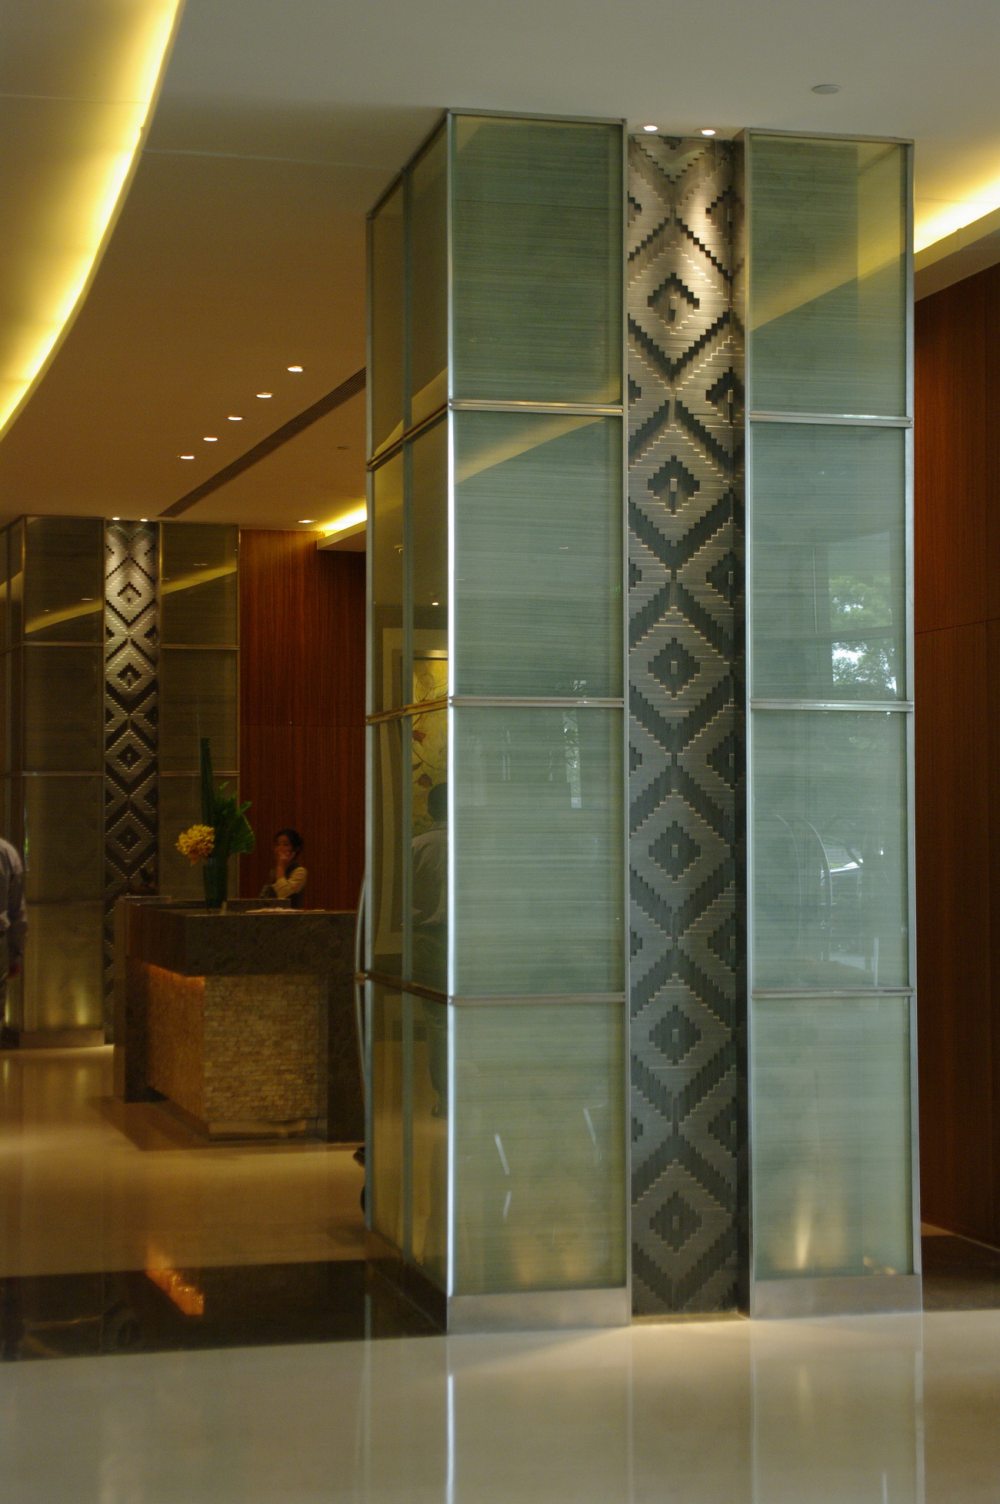 苏州晋合洲际Intercontinental酒店--2012.06.24第八页更新客房__IGP3929.JPG